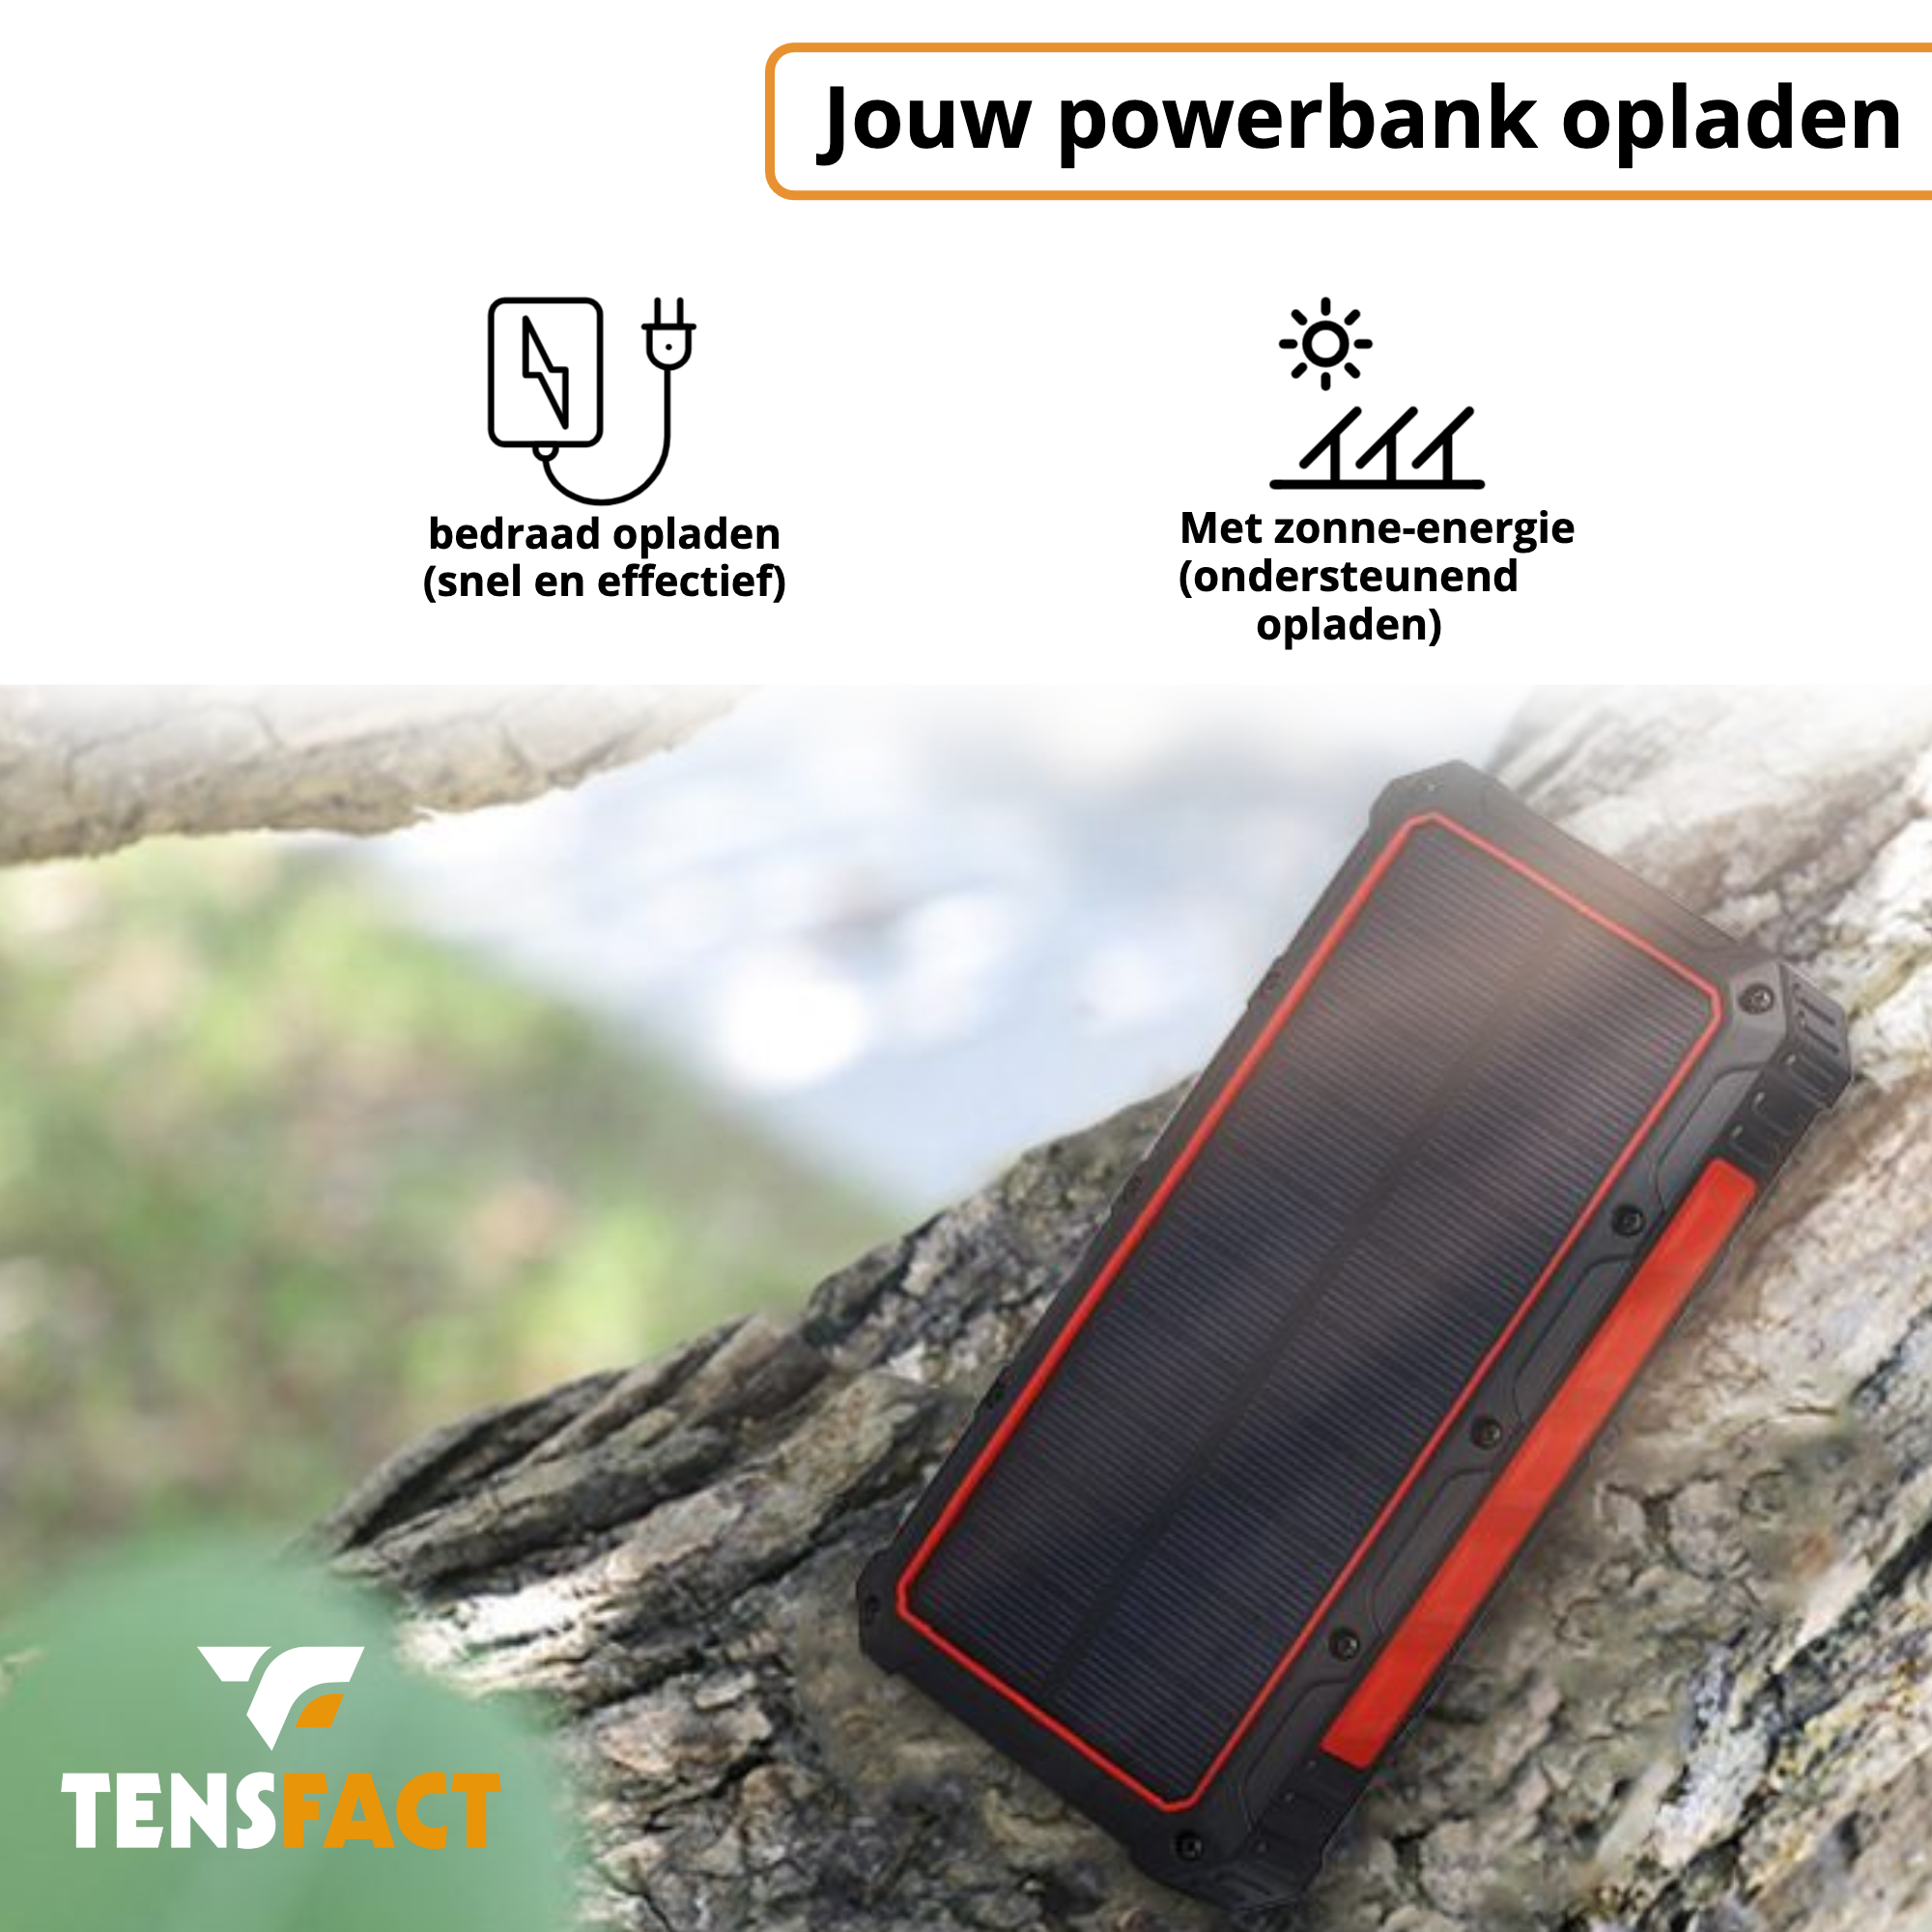 Tensfact Solar Powerbank 36000 mAh